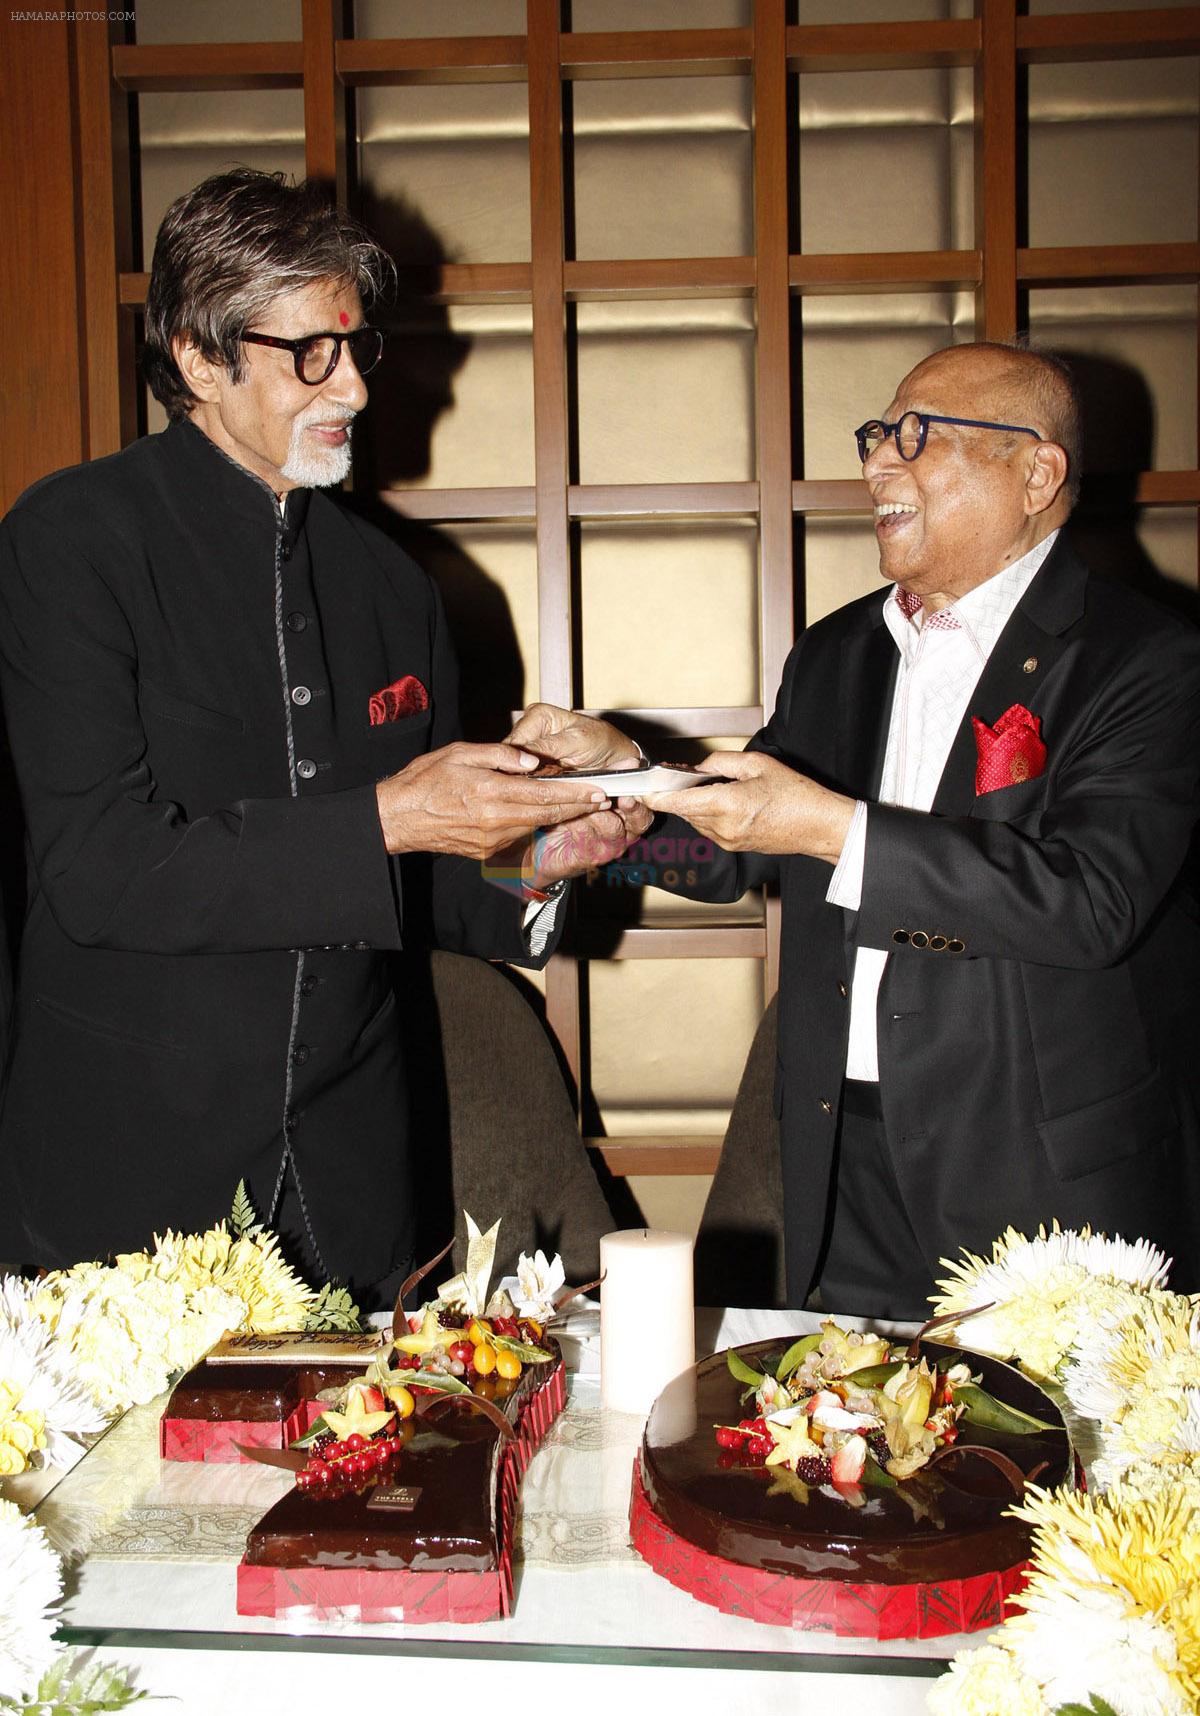 Amitabh Bachchan and Capt. Nair at the 70th birthday celebrations of Mr. Bachchan, at The Leela Mumbai